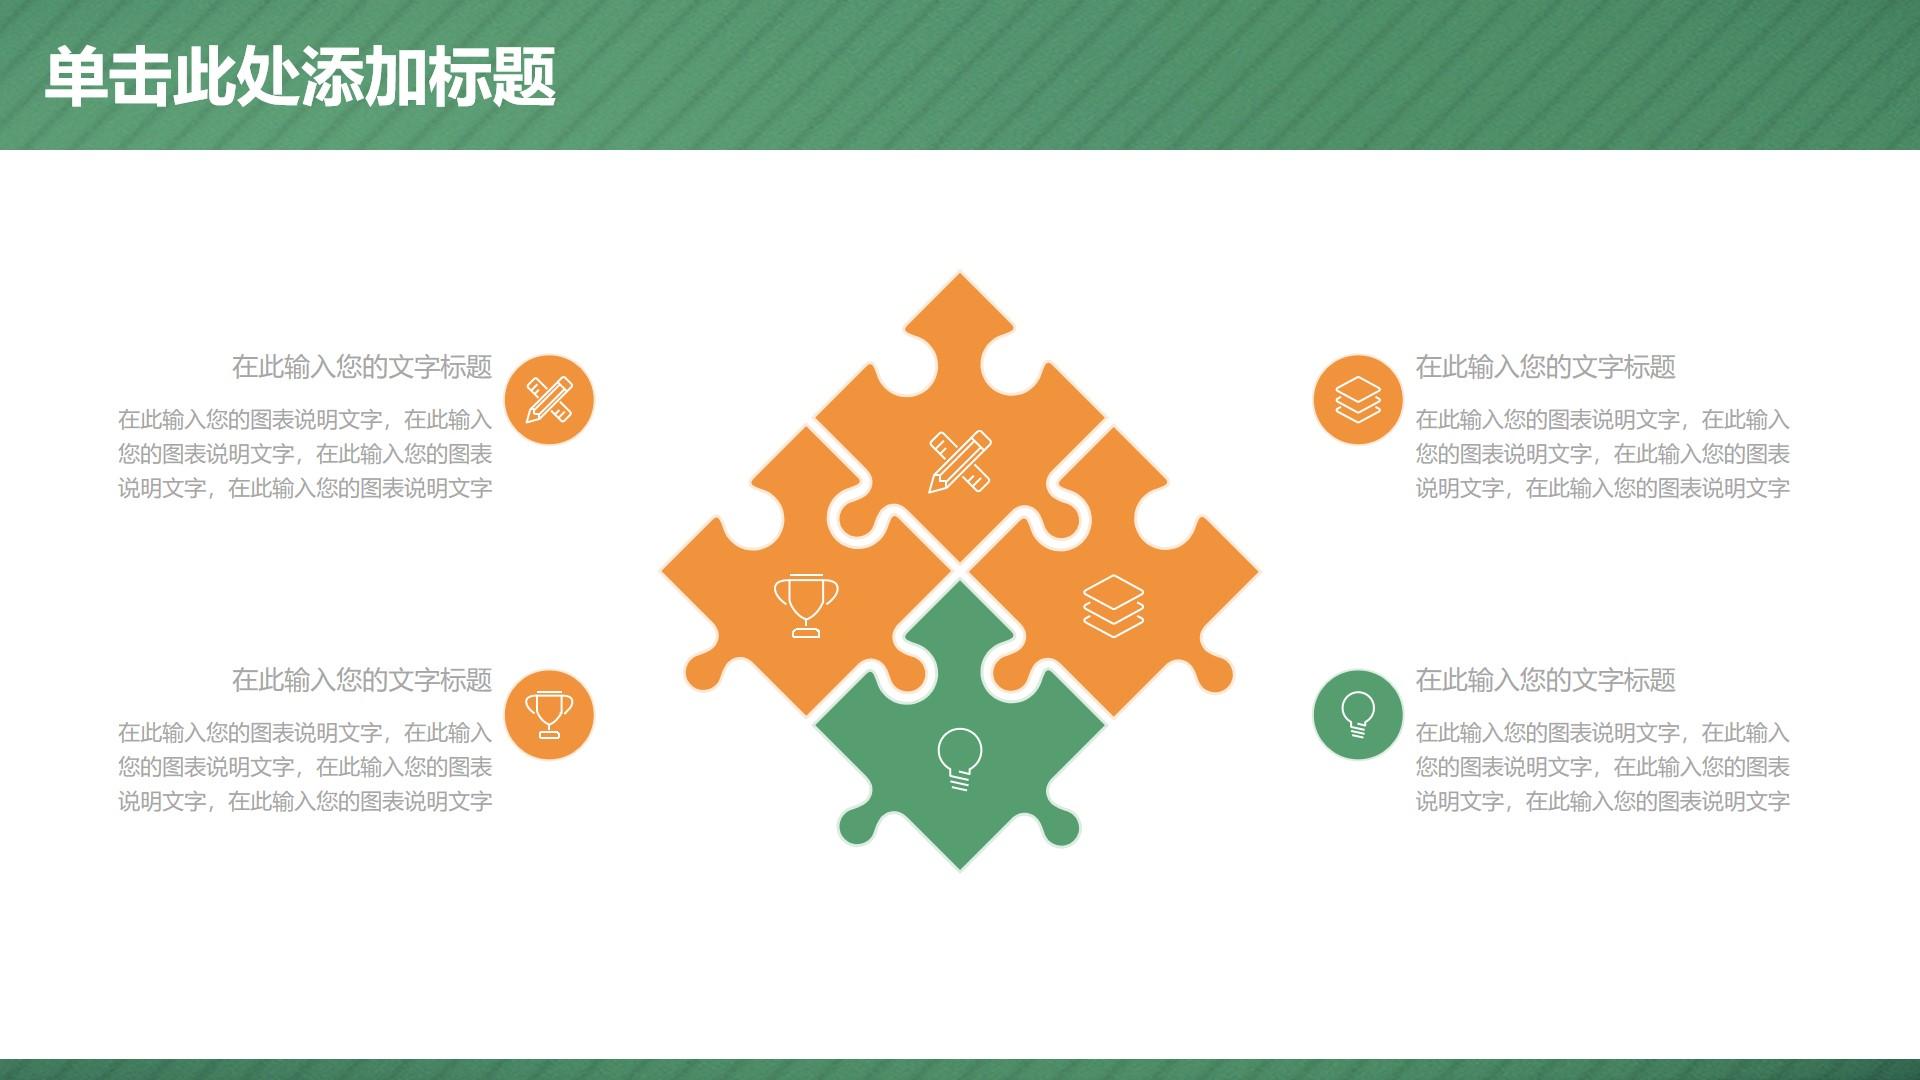 教育教学绿色橙色卡通简洁云素材PPT模板1672661758041